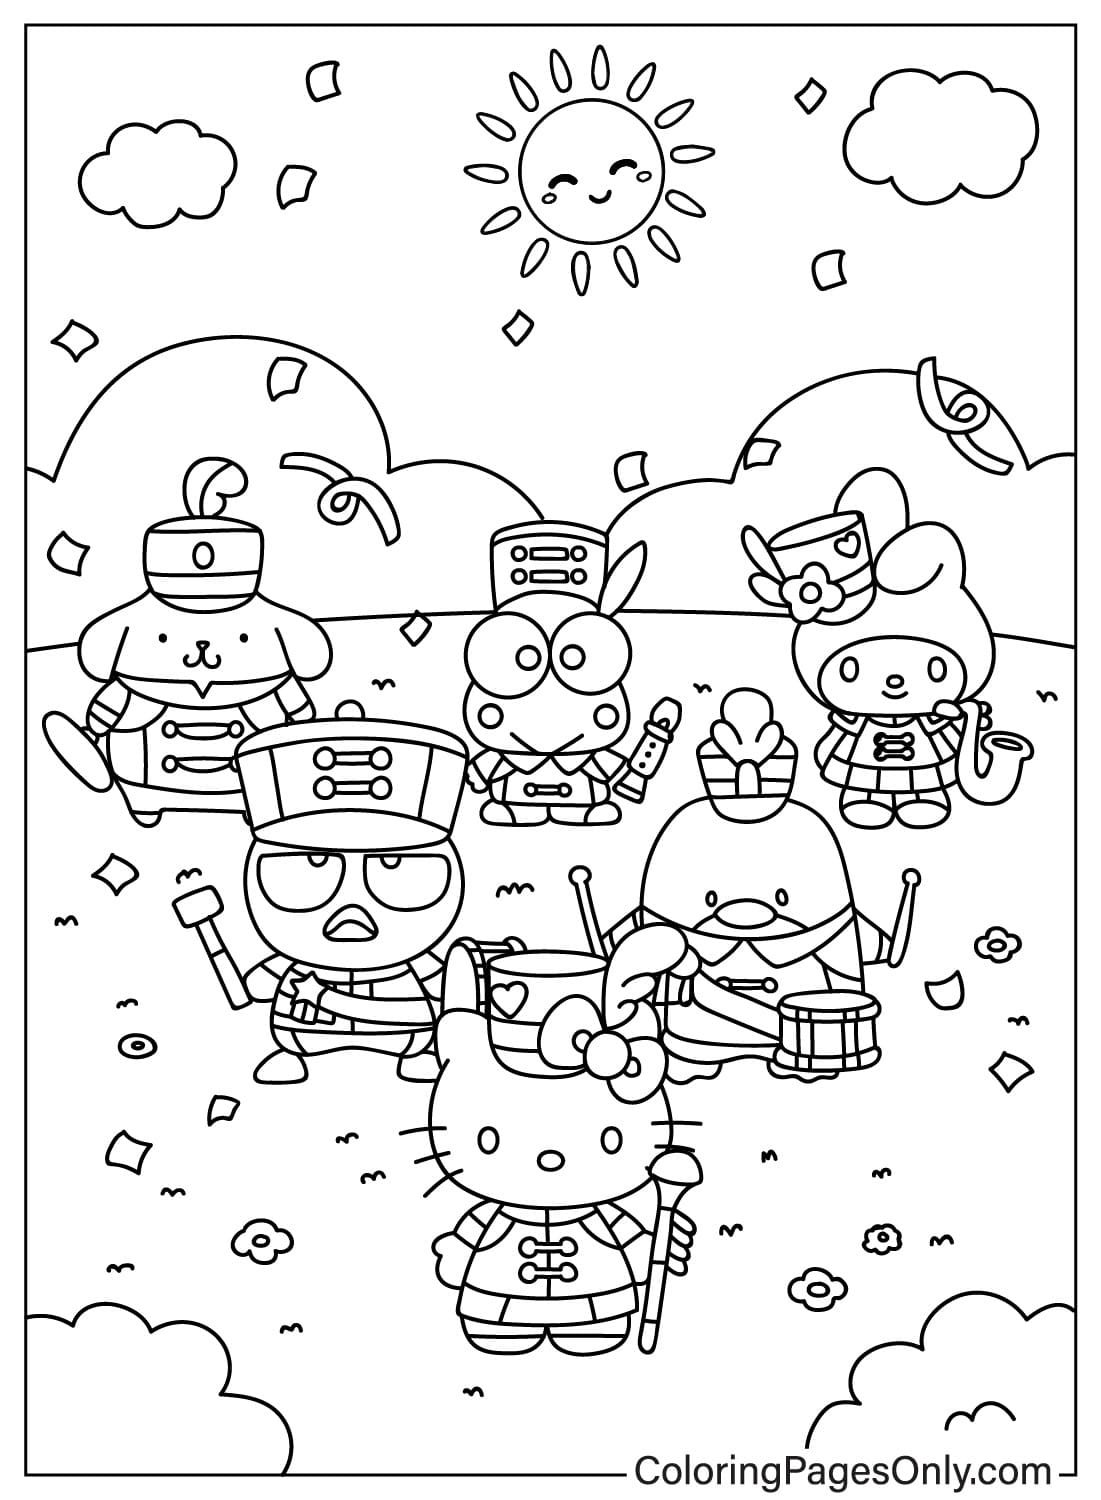 Página para colorear de Sanrio gratis de Keroppi